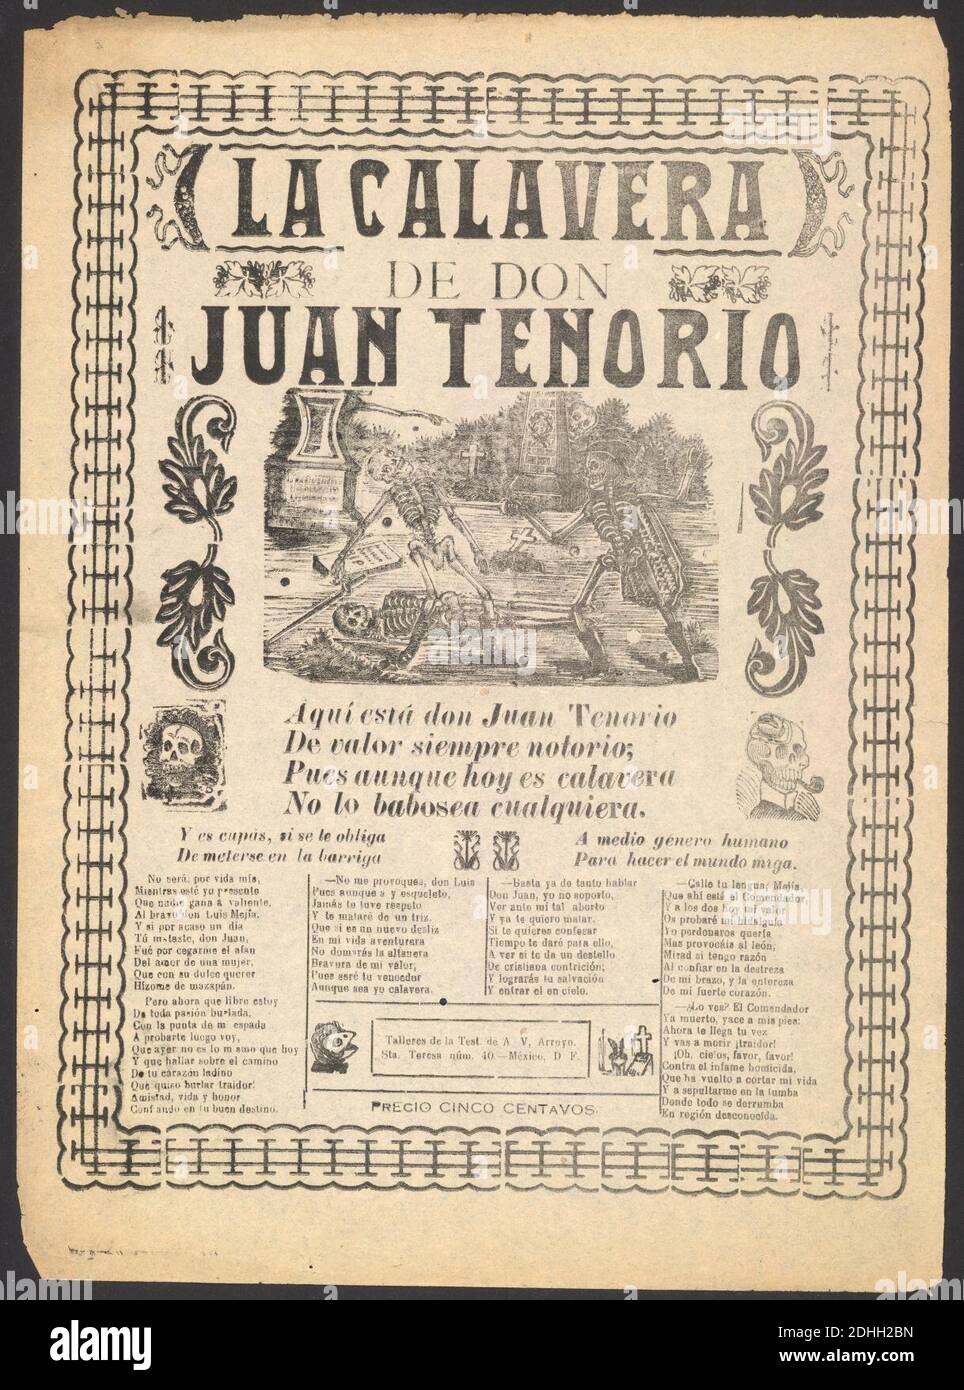 La calavera de Don Juan Tenorio Stock Photo